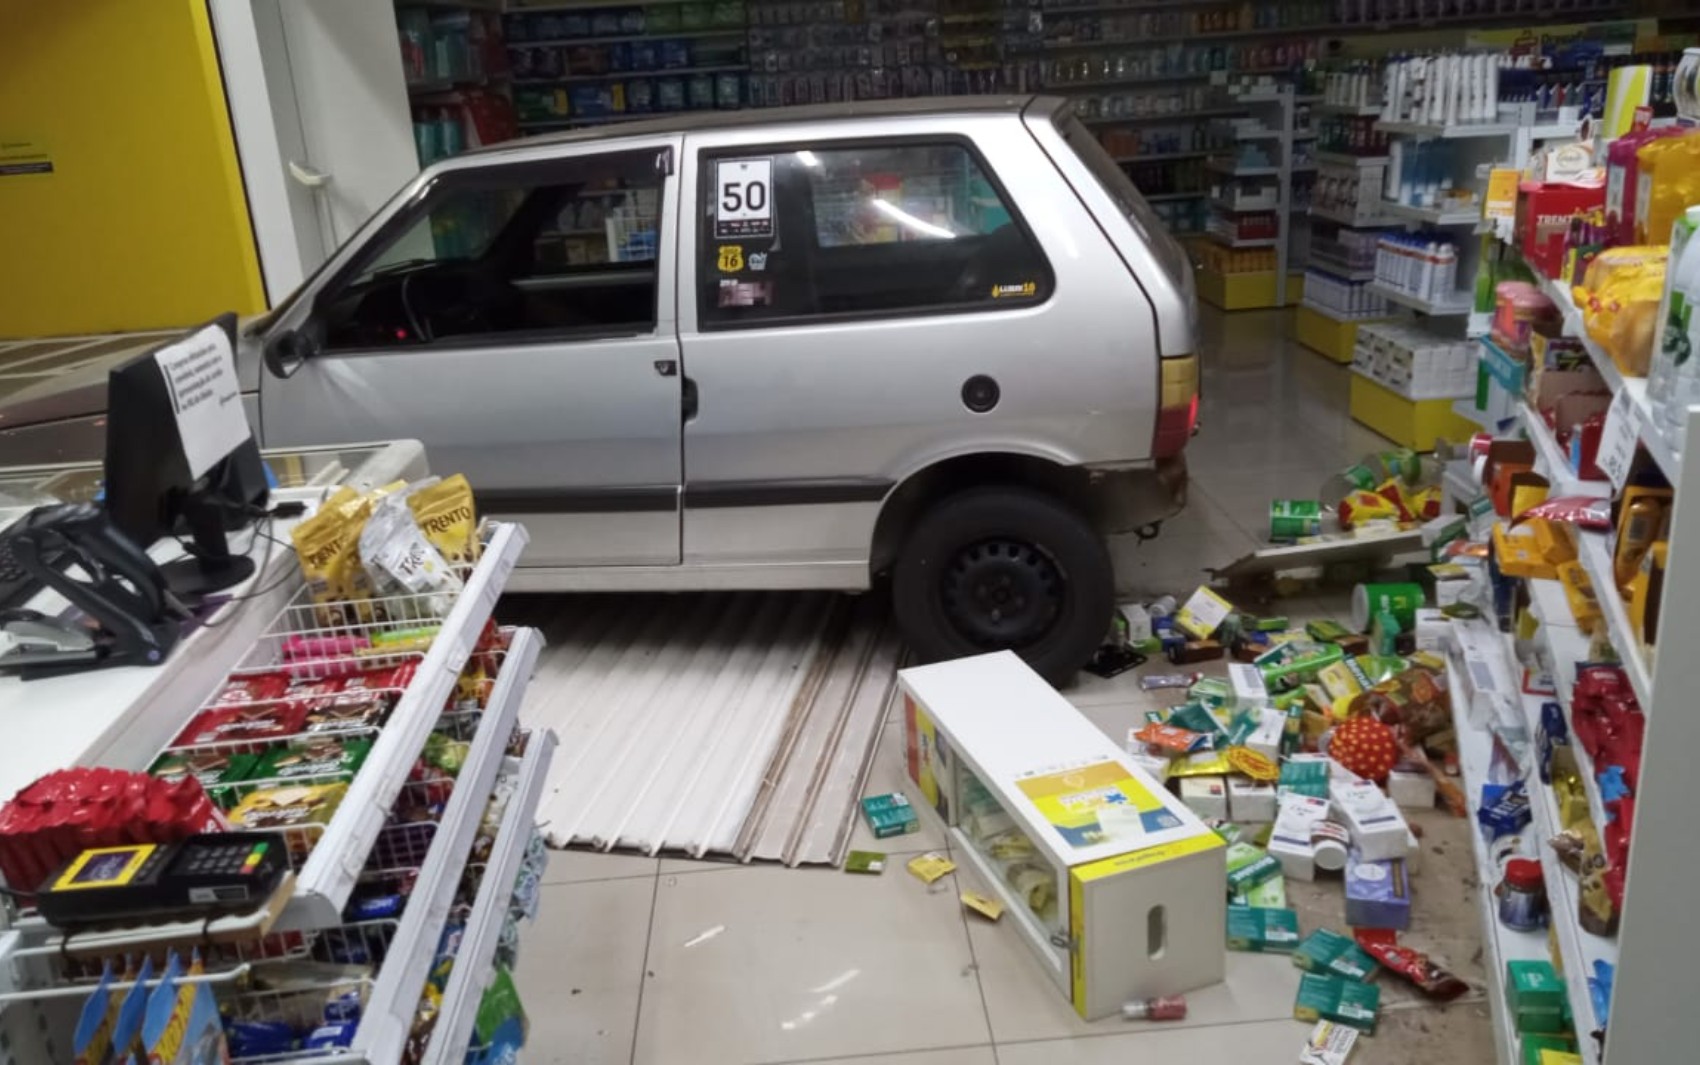 Ladrão invade farmácia com carro em marcha à ré, furta produtos e abandona veículo em Franca, SP; VÍDEO